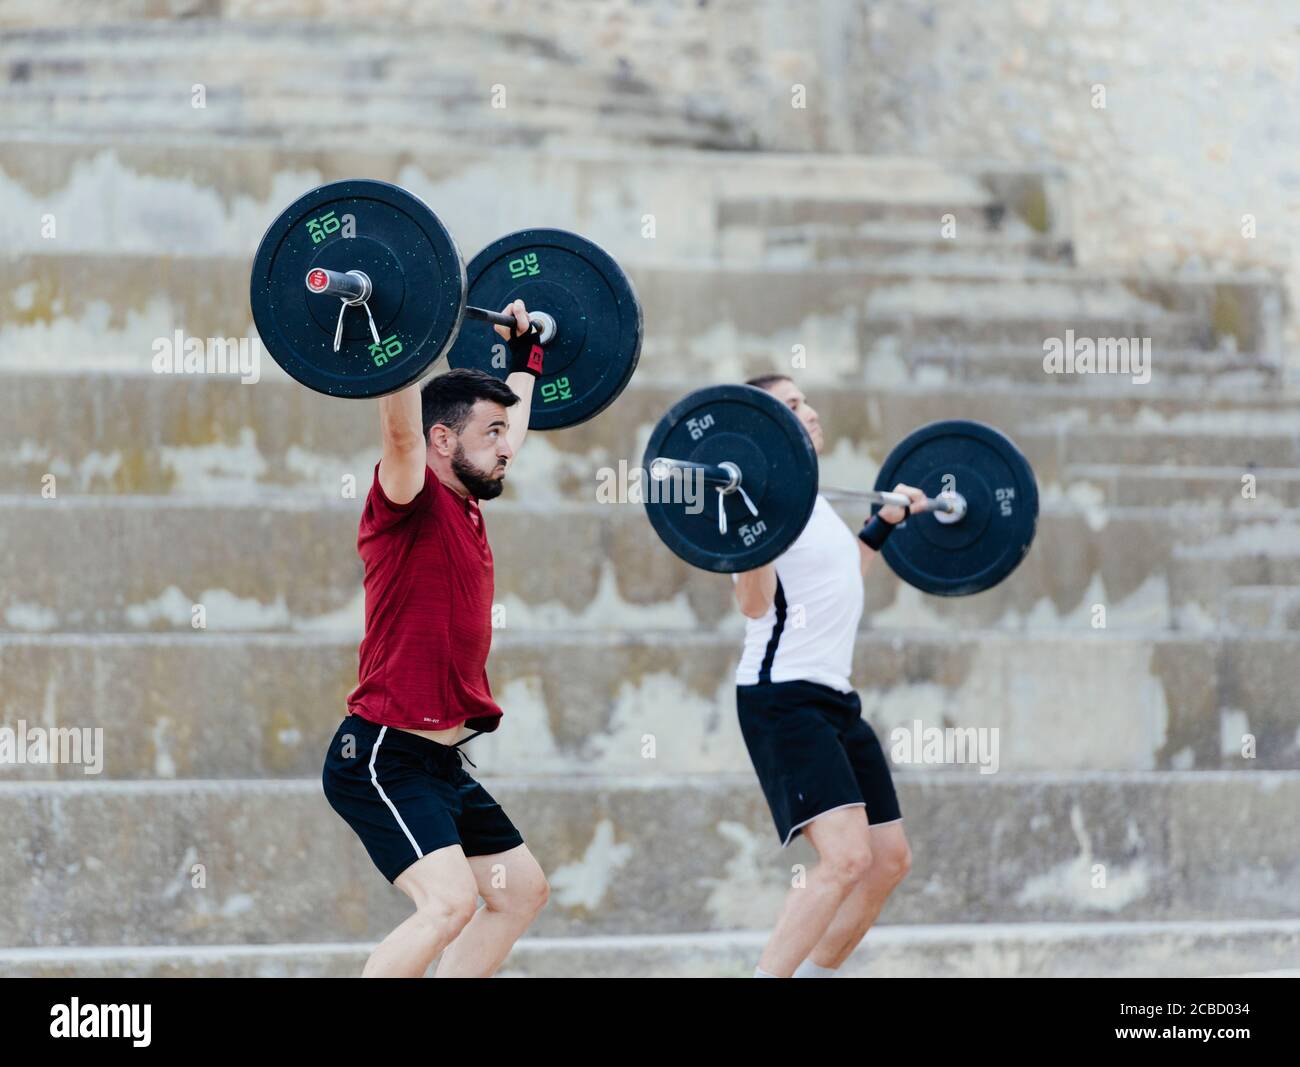 Zwei Gewichtheber heben Gewichte in einer städtischen Umgebung. Stockfoto